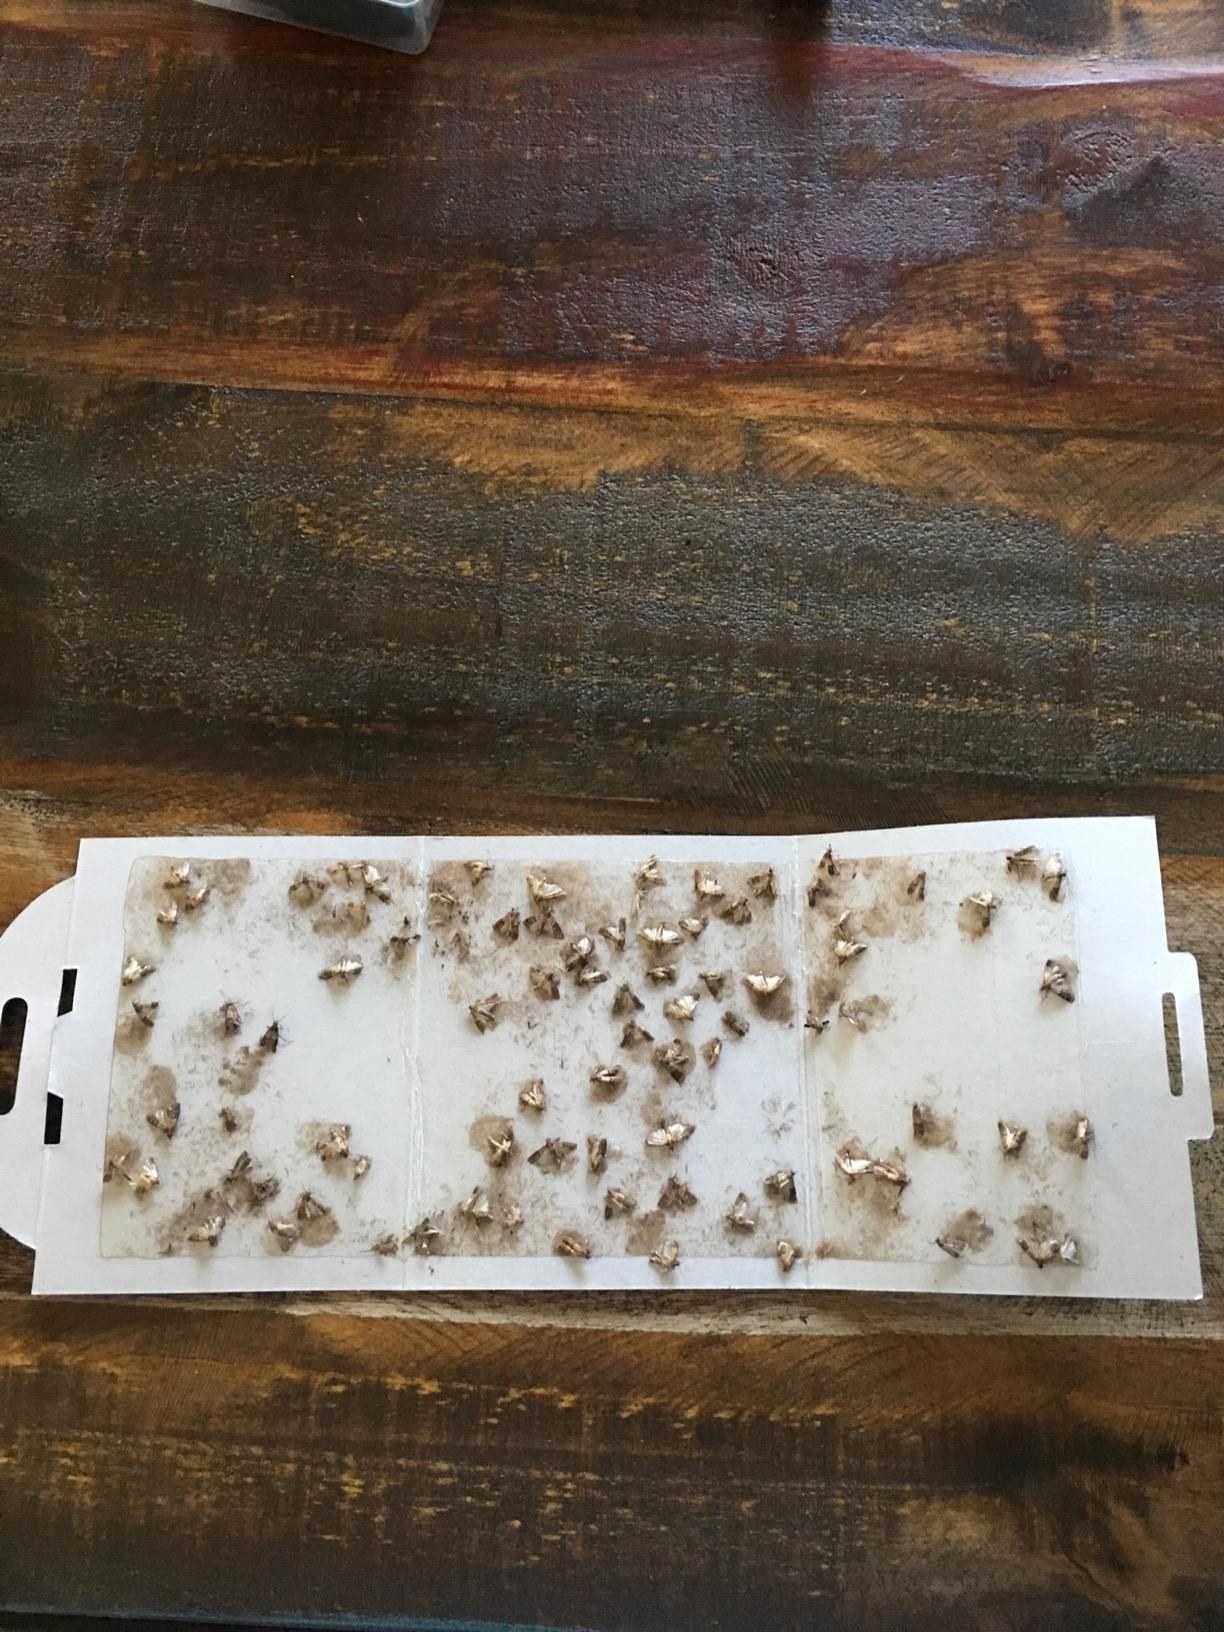 many moths on glue trap 